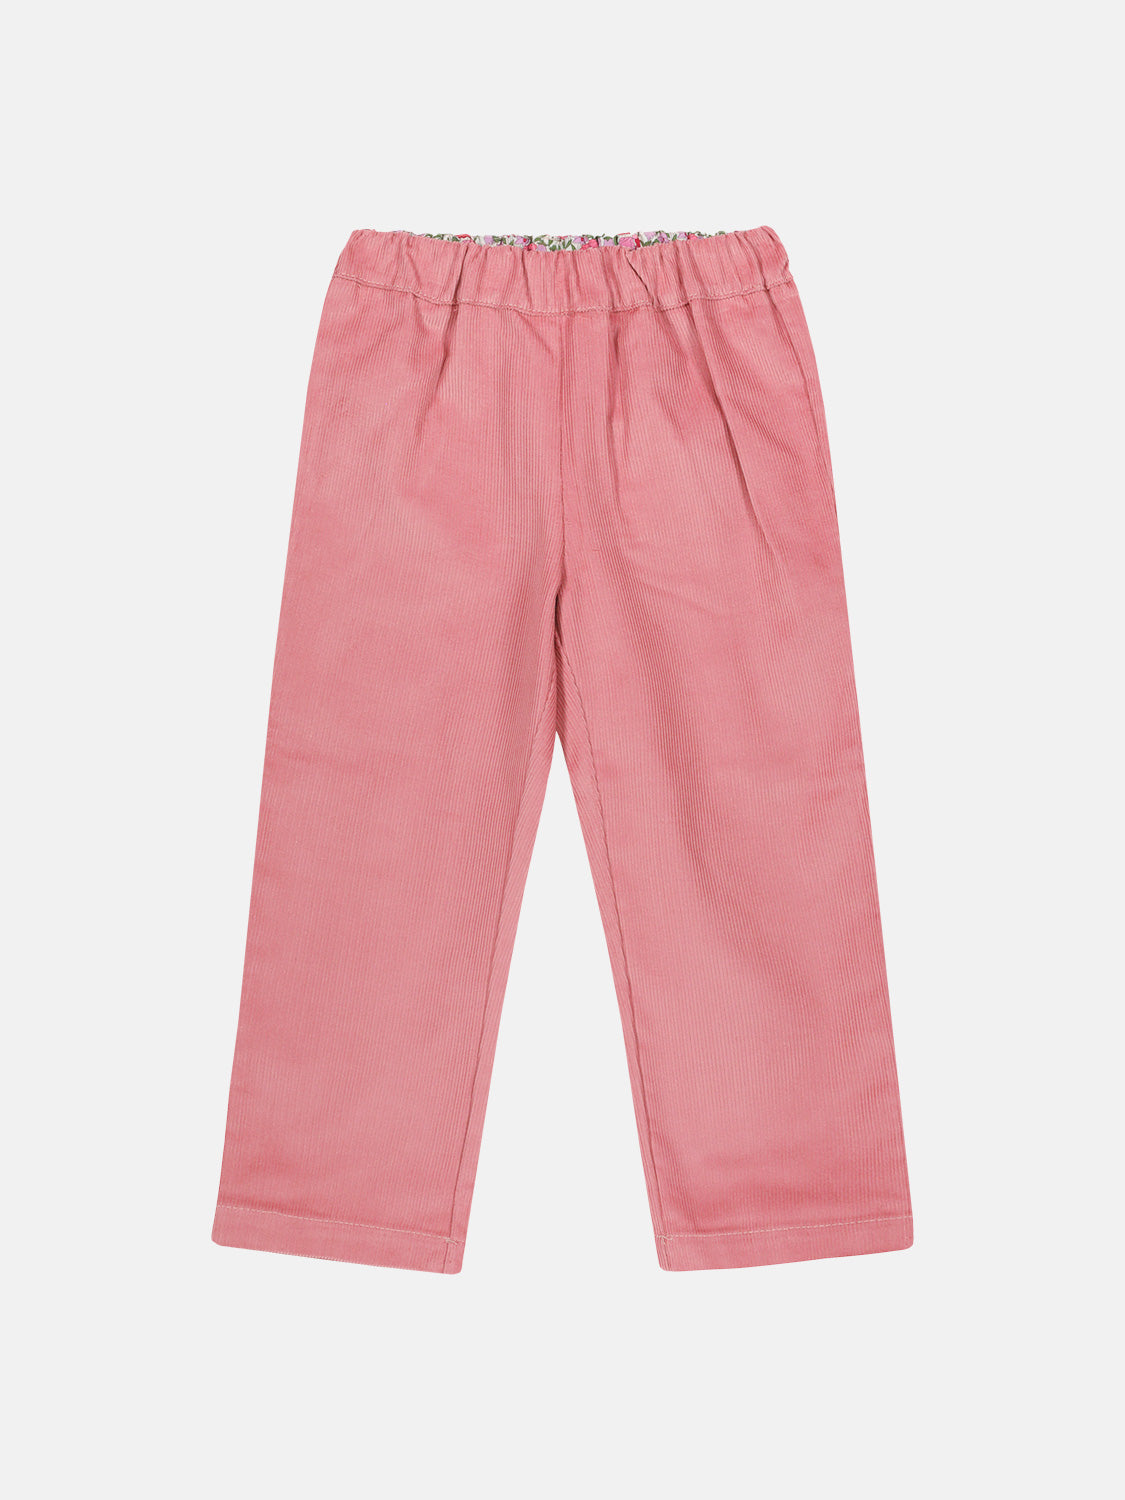 Pantalone Velluto Pink